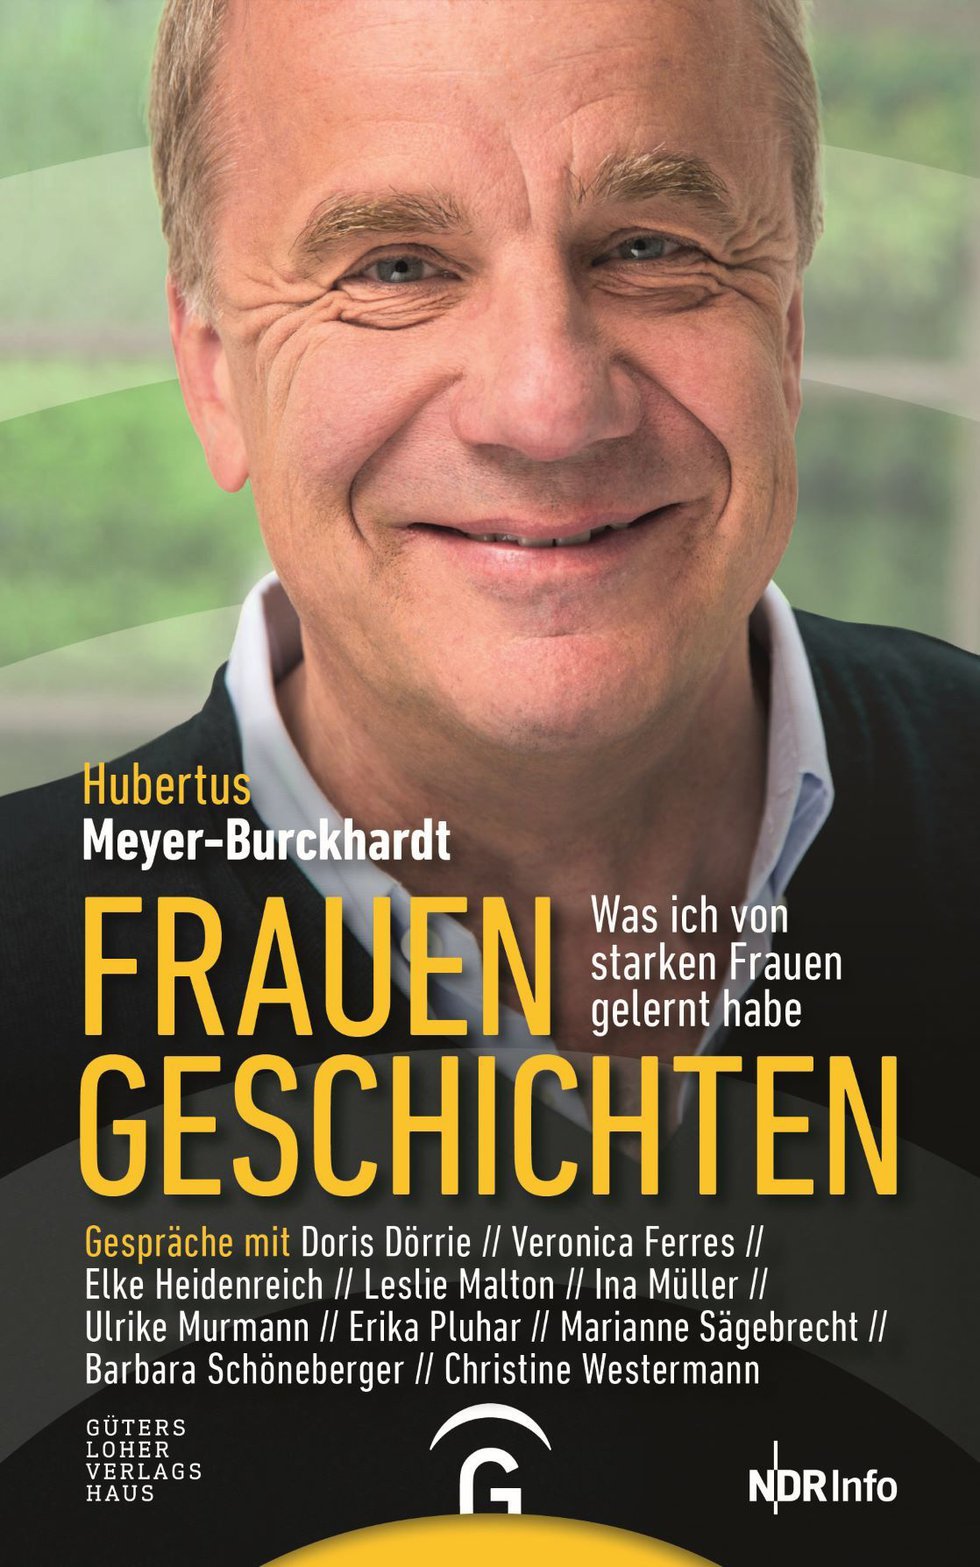 MHK_Hubertus Meyer-Burckhardt_Frauengeschichten_Cover.jpg